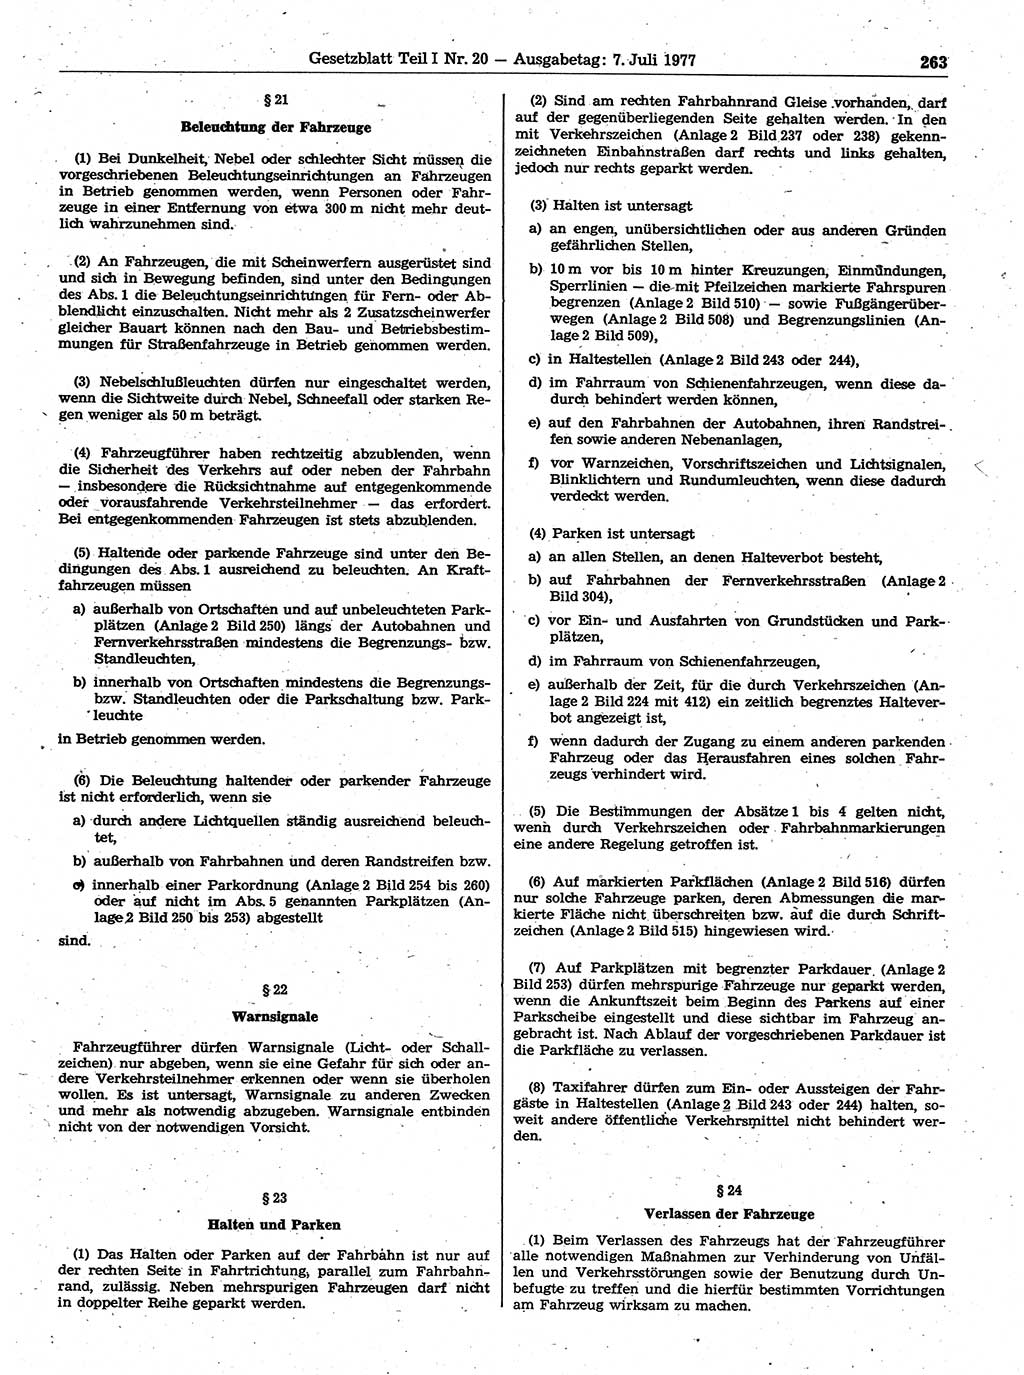 Gesetzblatt (GBl.) der Deutschen Demokratischen Republik (DDR) Teil Ⅰ 1977, Seite 263 (GBl. DDR Ⅰ 1977, S. 263)